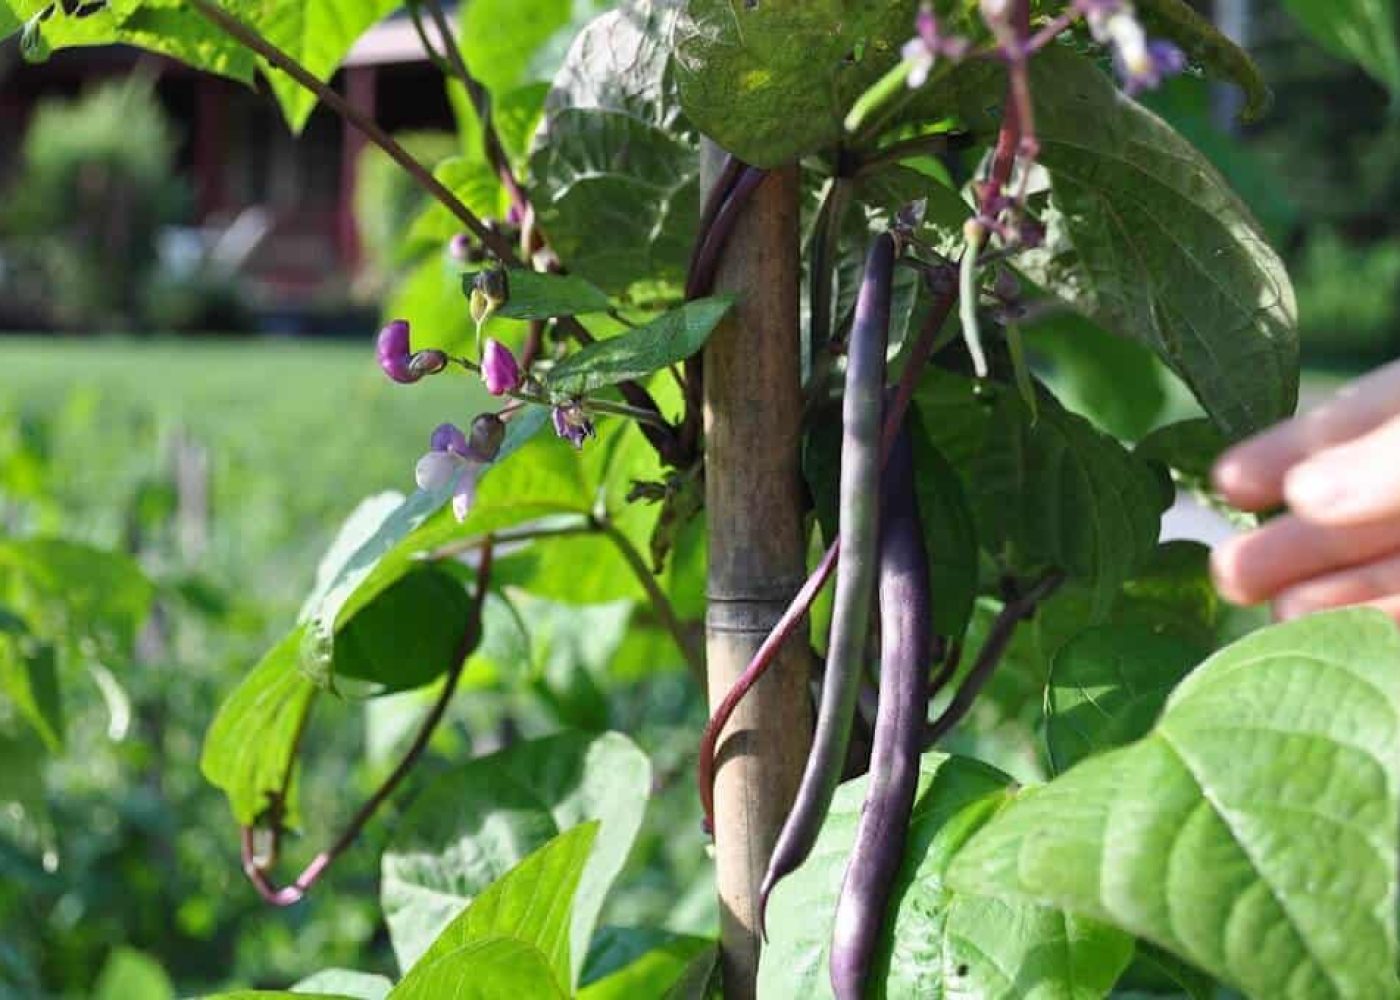 Odling av purpurböna, lila purpurbönor på uppbunden störpurpurböna